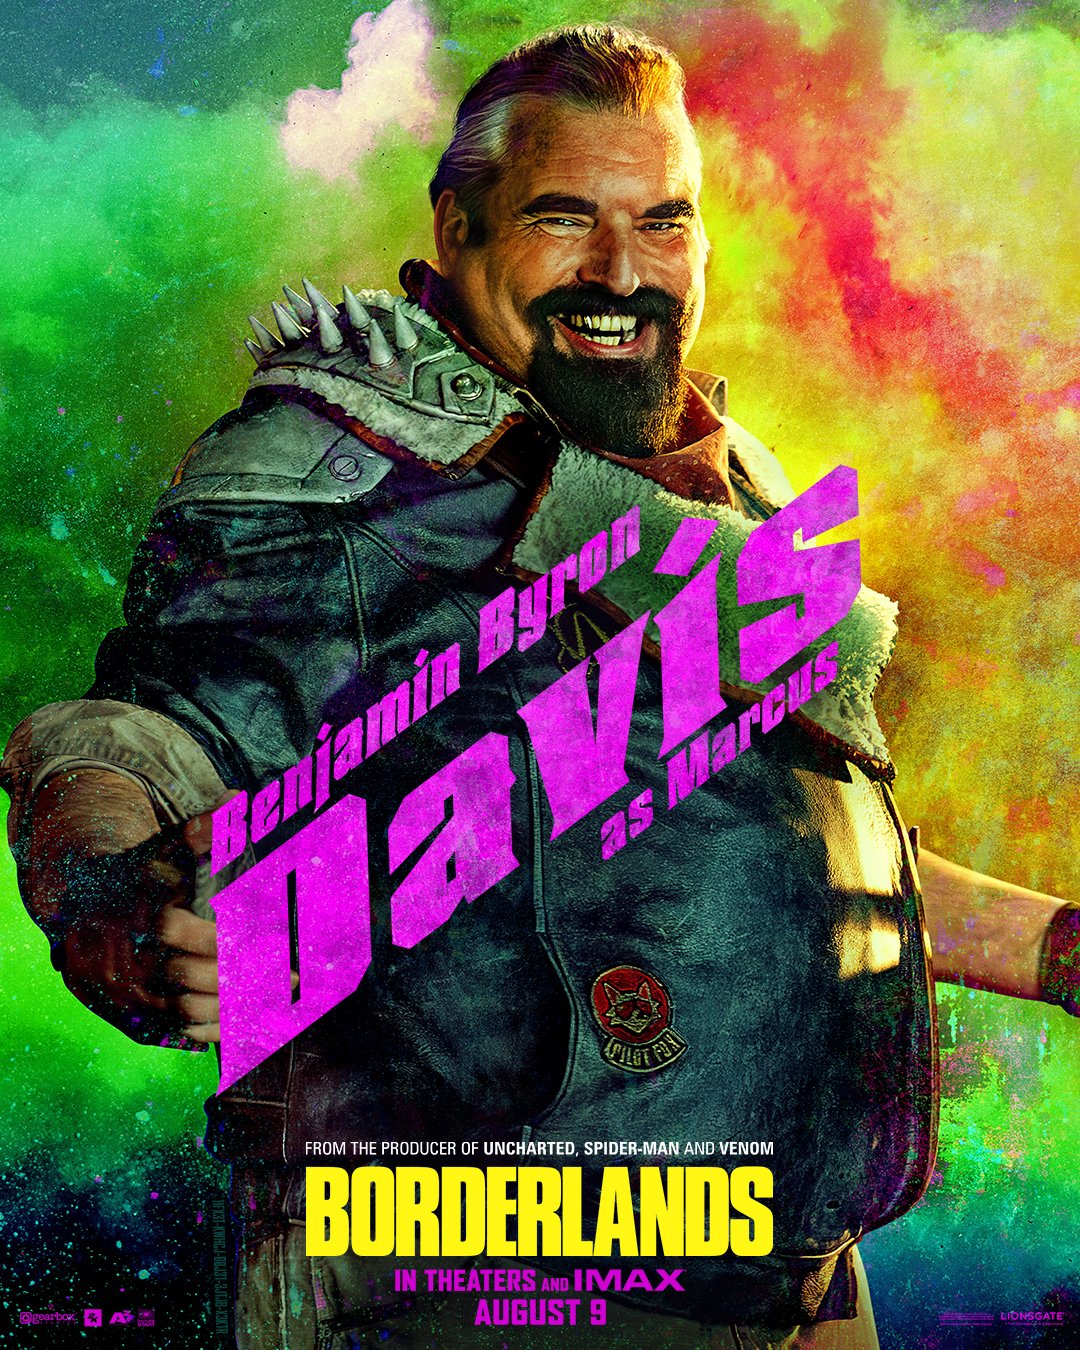 Постеры с персонажами Borderlands в центре внимания игрового фильма со второстепенным актерским составом